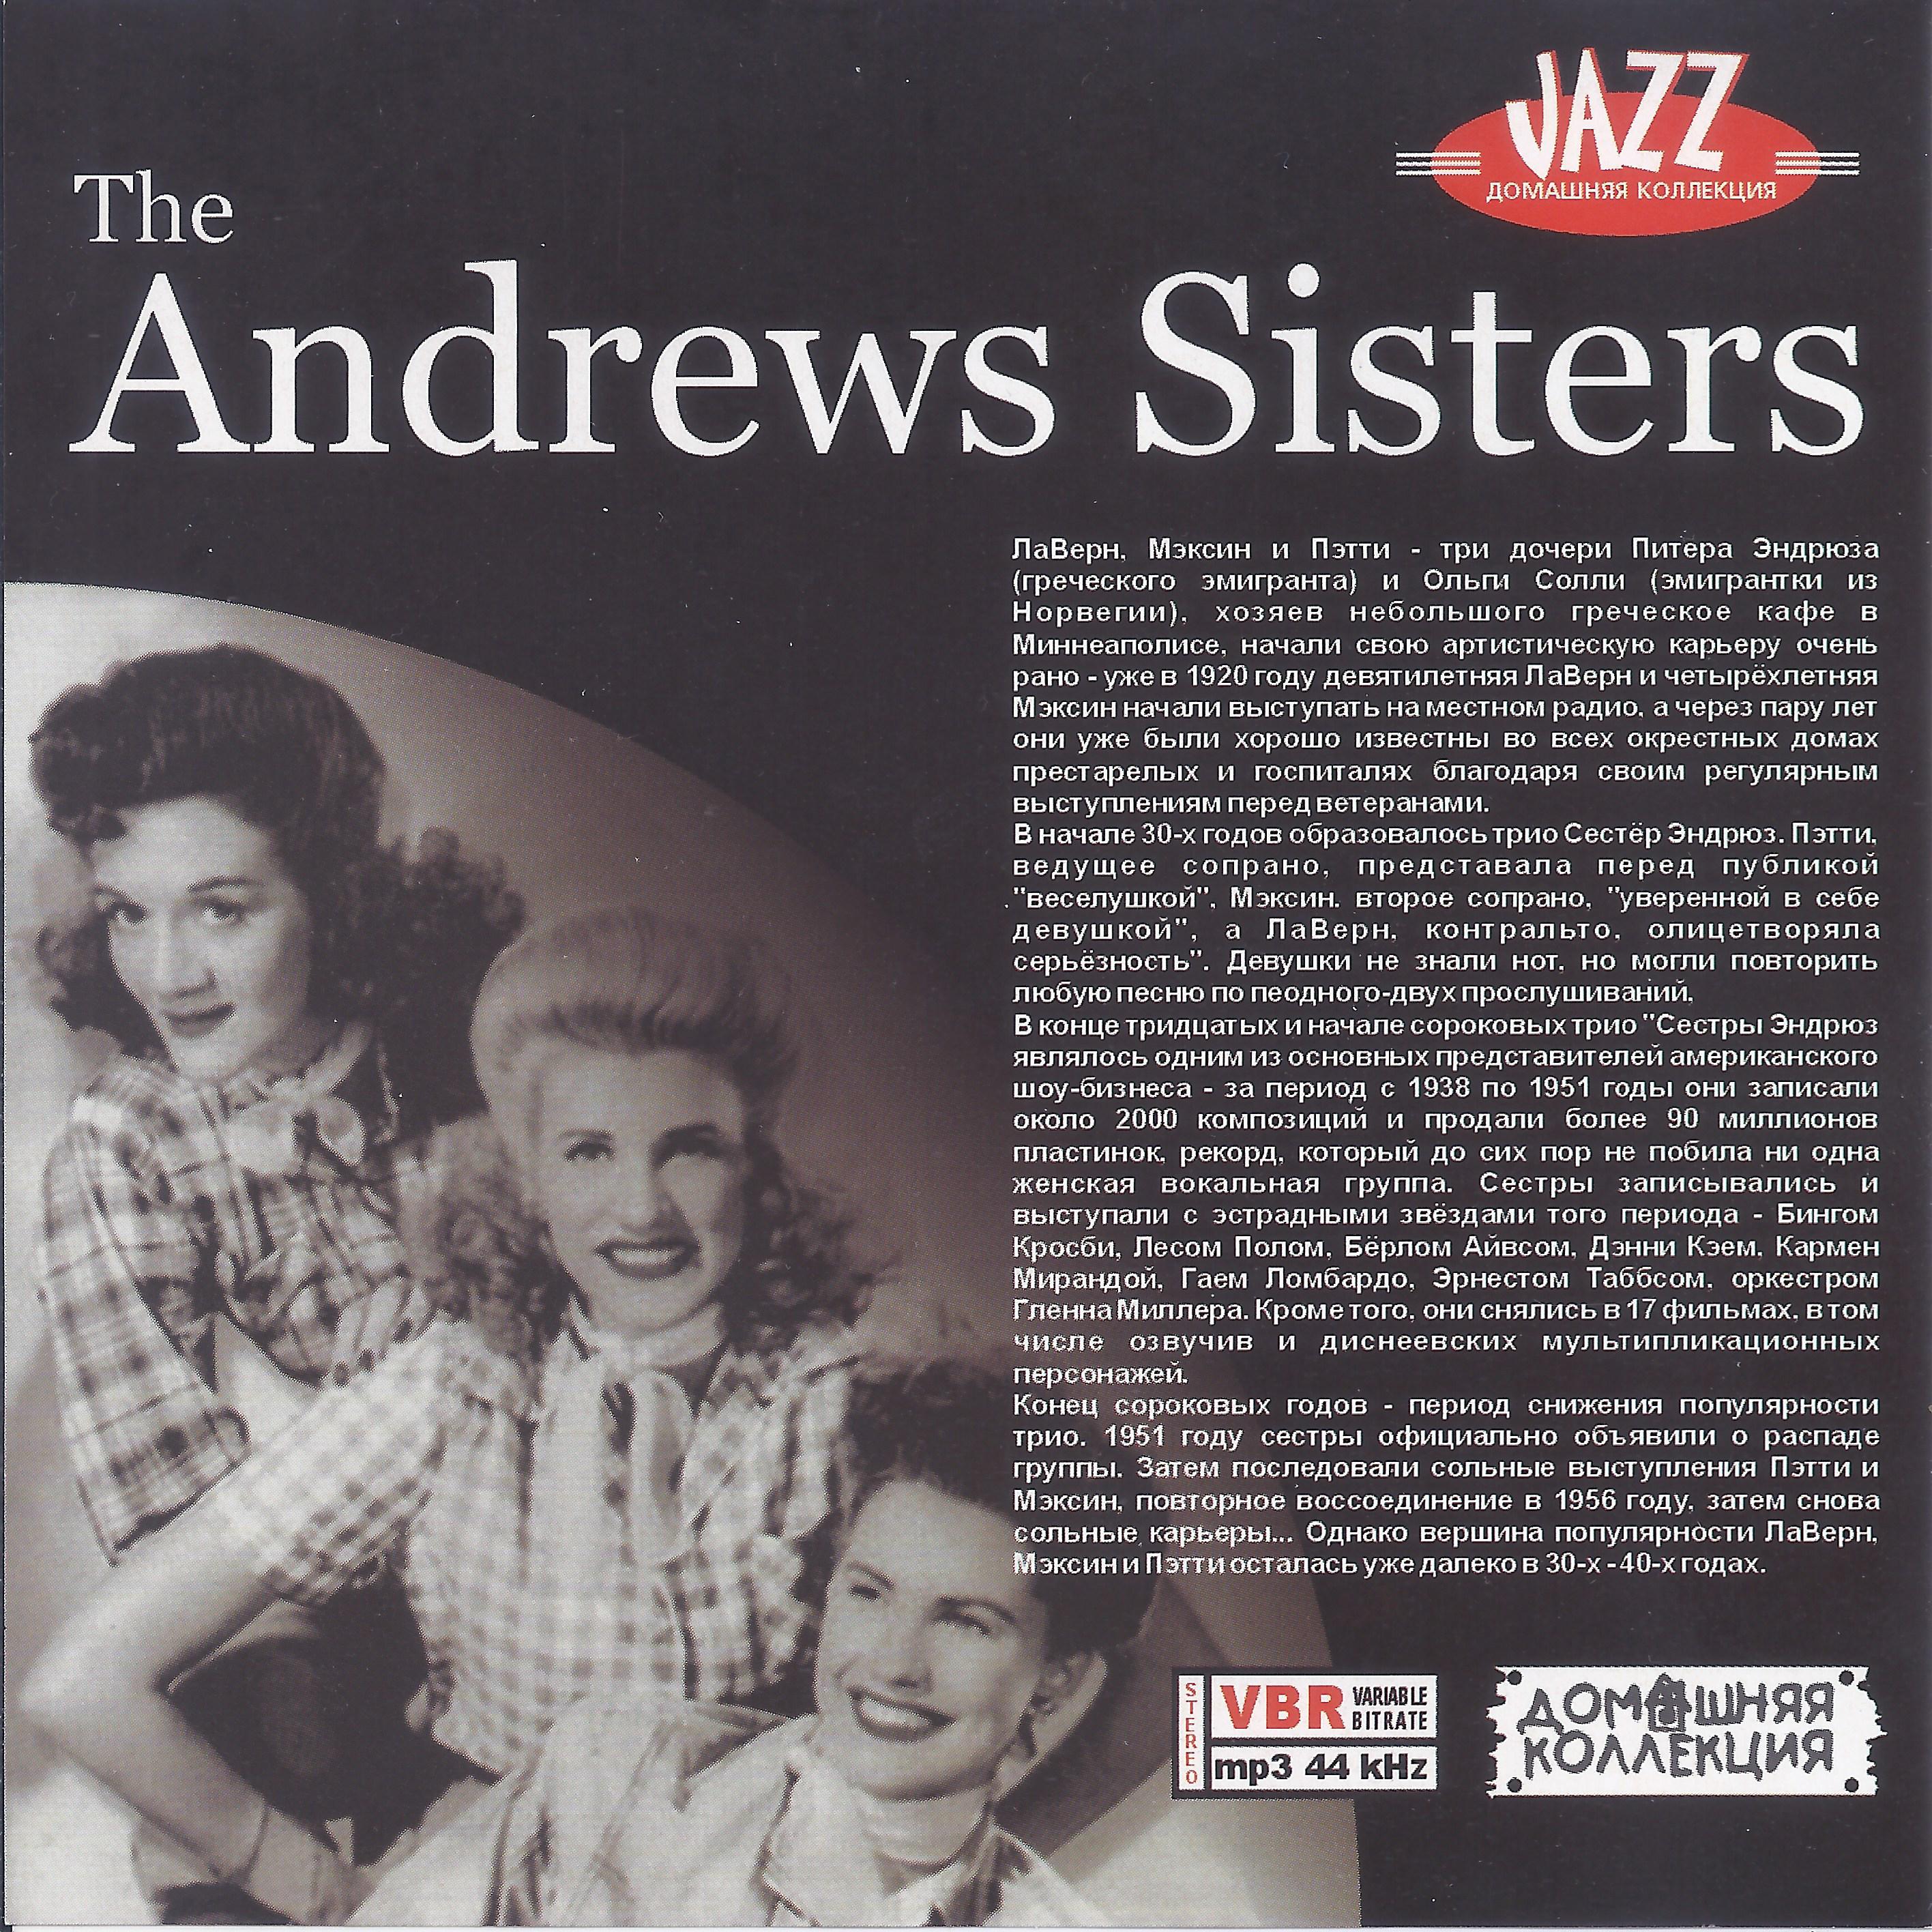 Andrew's sisters. Сестры Эндрюс. The Andrews sisters фото. The Andrews sisters сейчас. The Andrews sisters Жанр музыки.